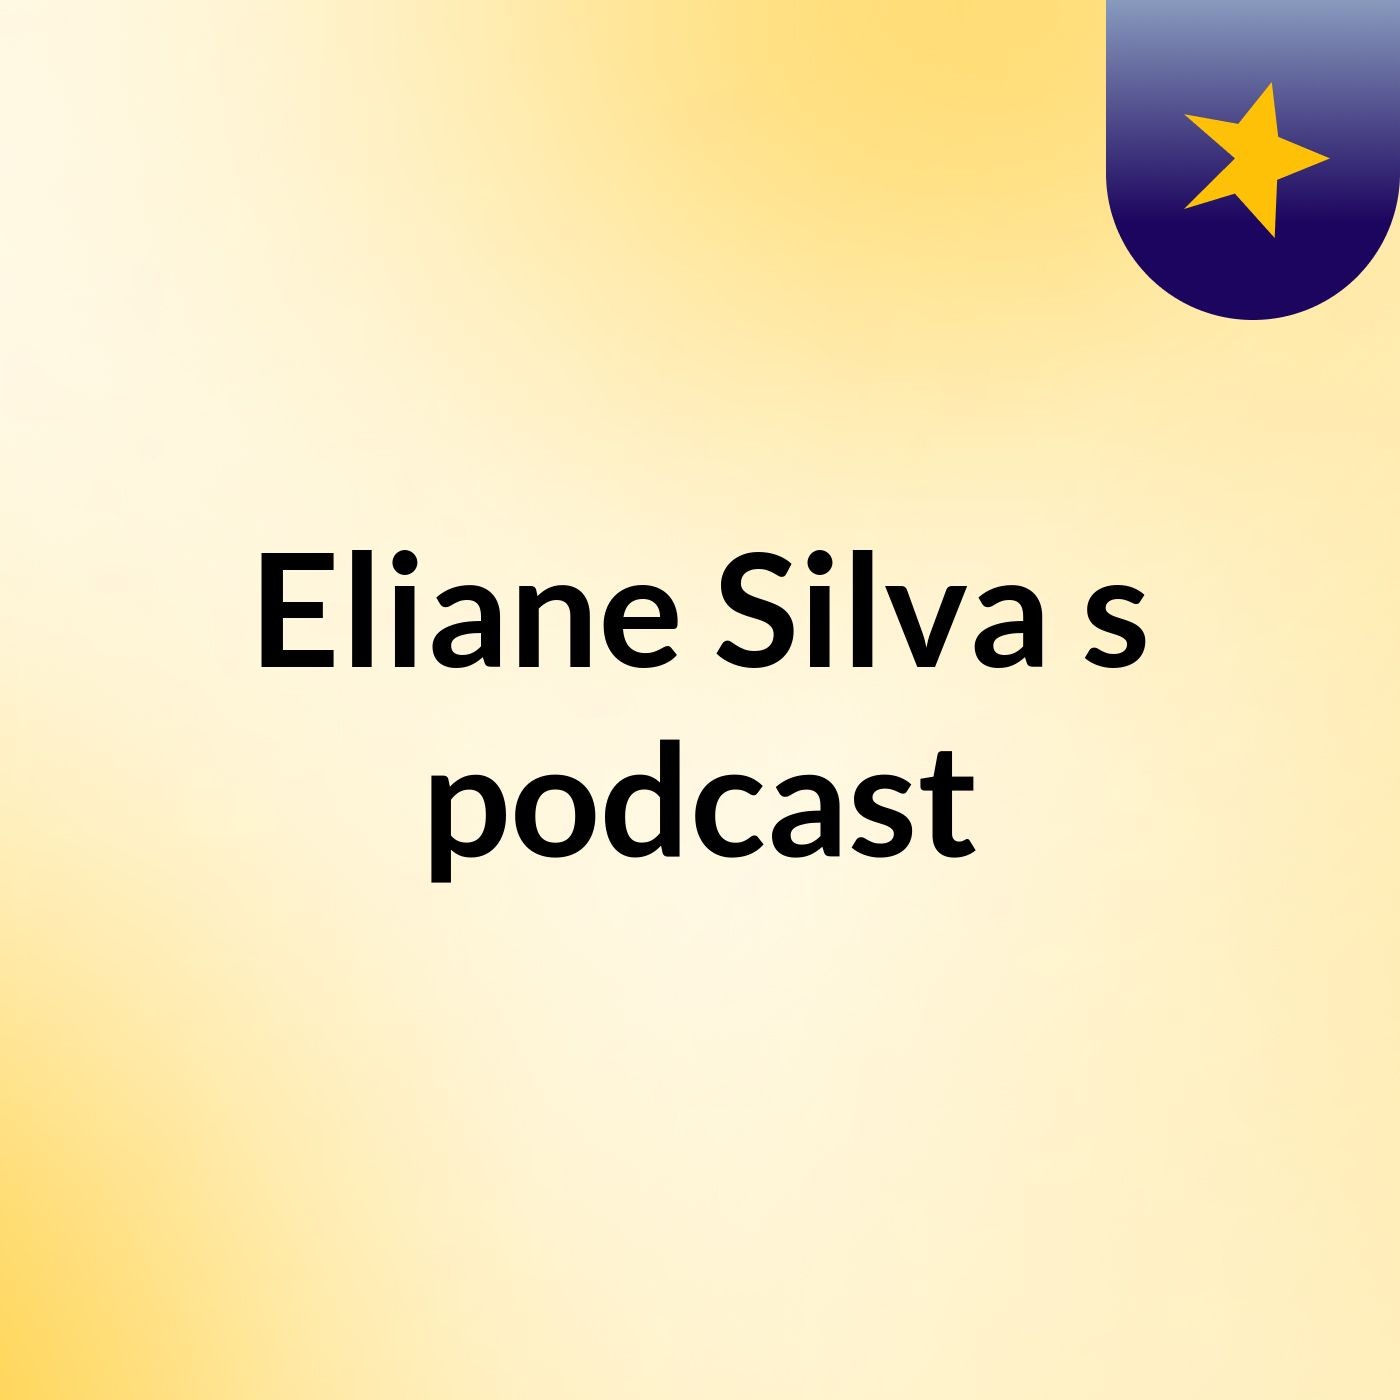 Eliane Silva's podcast